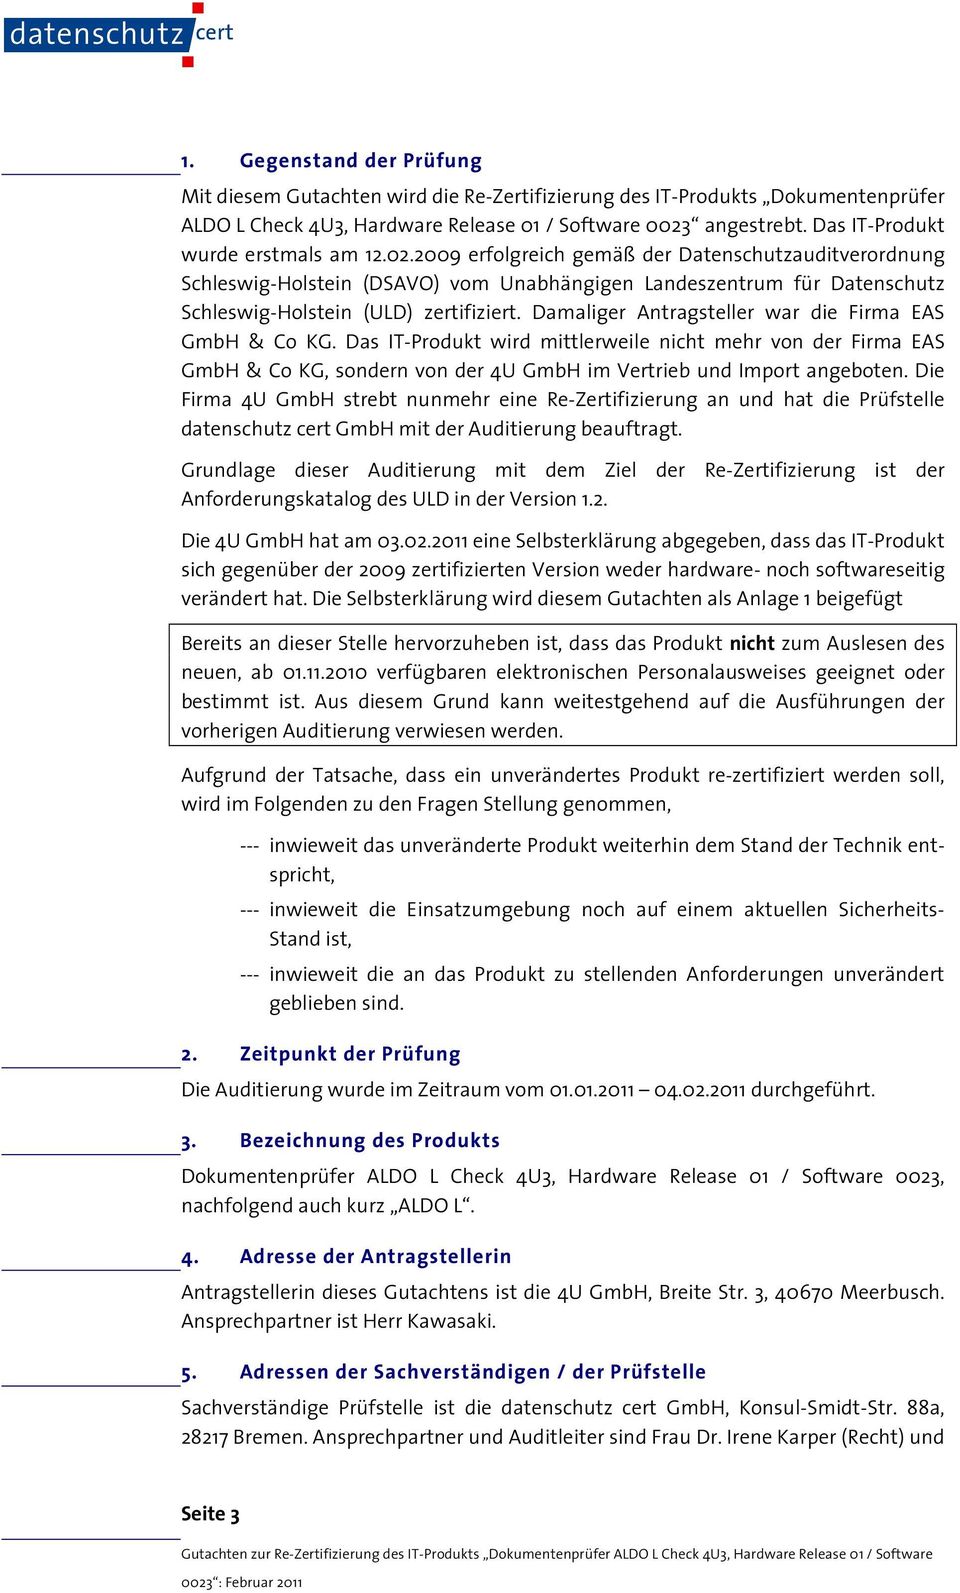 2009 erfolgreich gemäß der Datenschutzauditverordnung Schleswig-Holstein (DSAVO) vom Unabhängigen Landeszentrum für Datenschutz Schleswig-Holstein (ULD) zertifiziert.